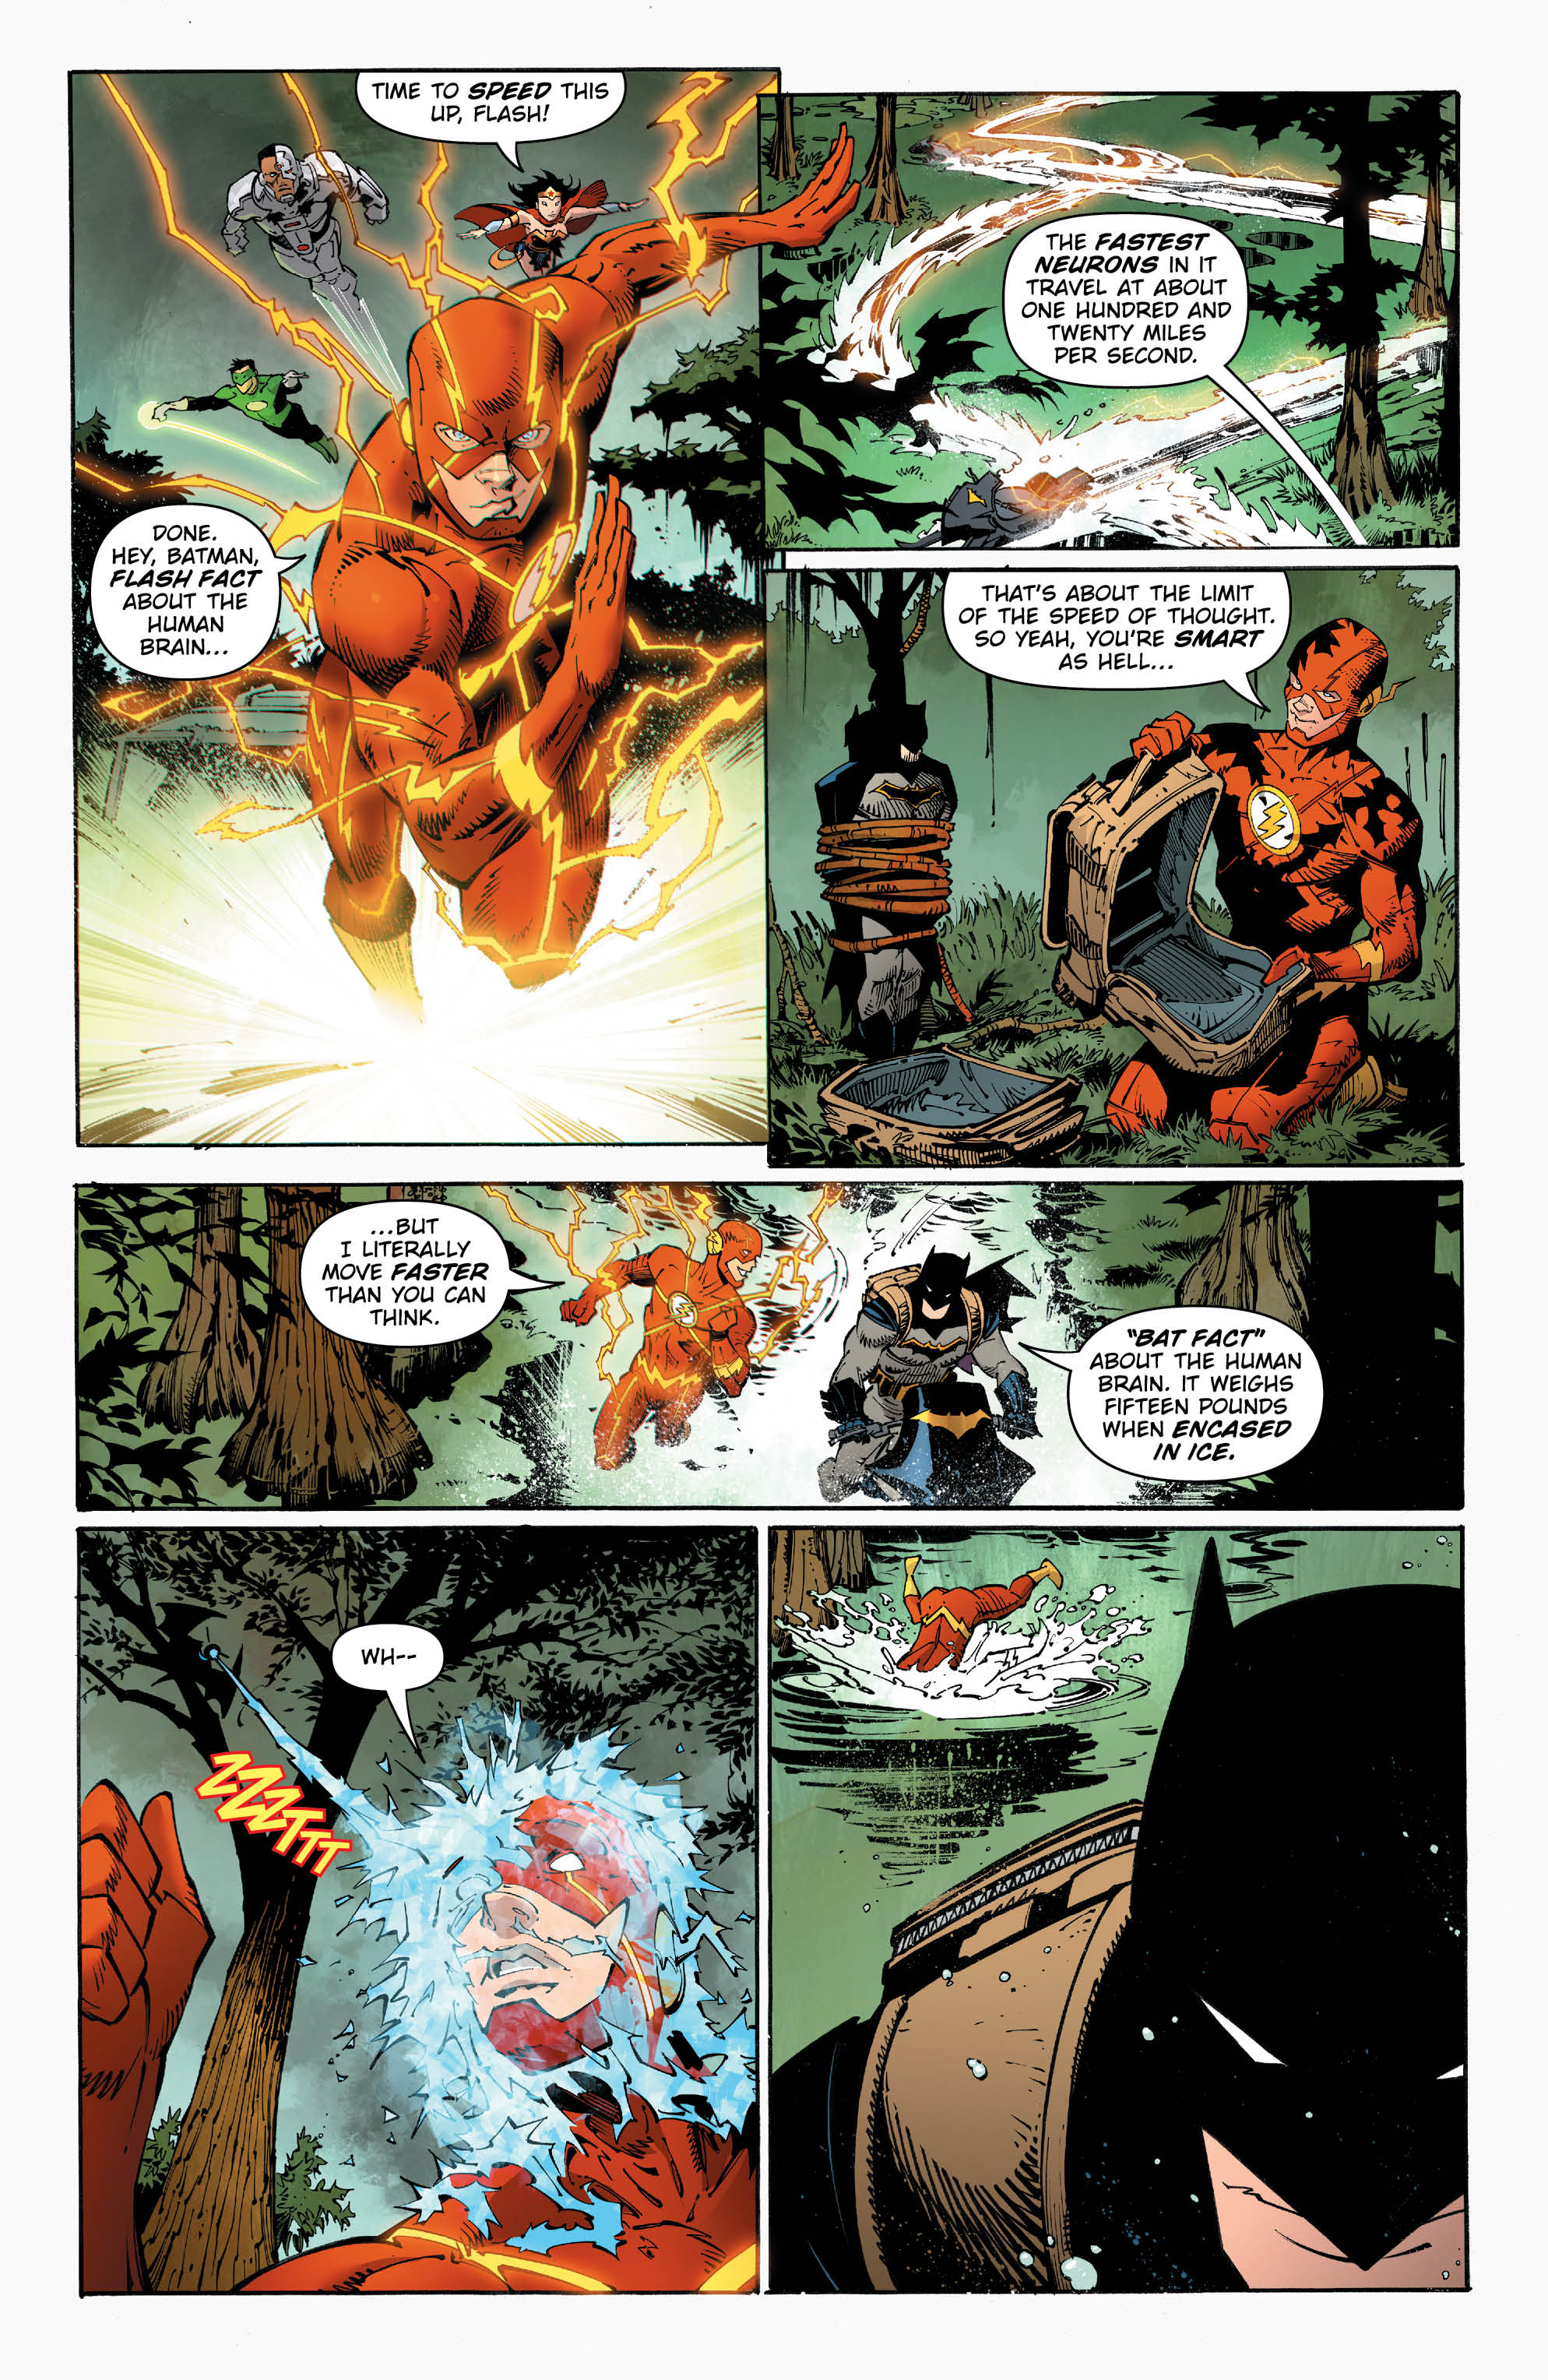 Metal 2 - Page 5 - DC Comics News